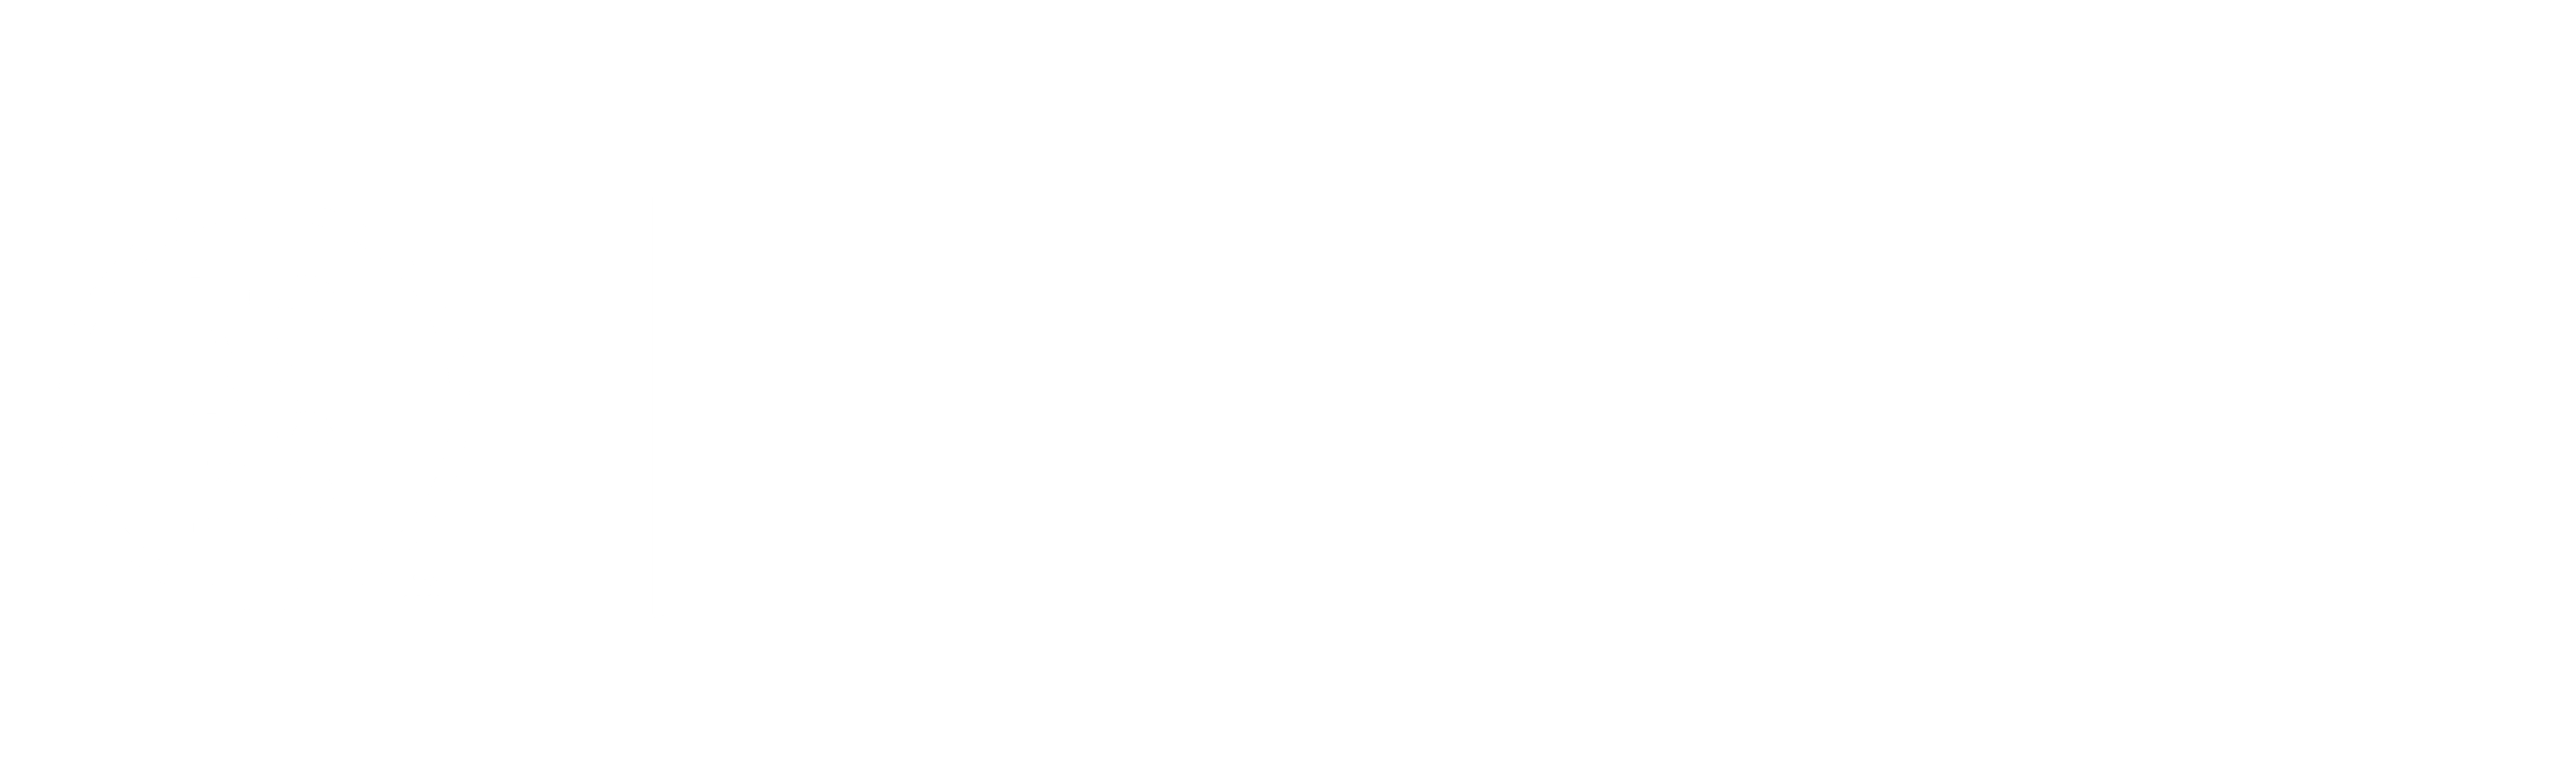 No BS Business Women Logo